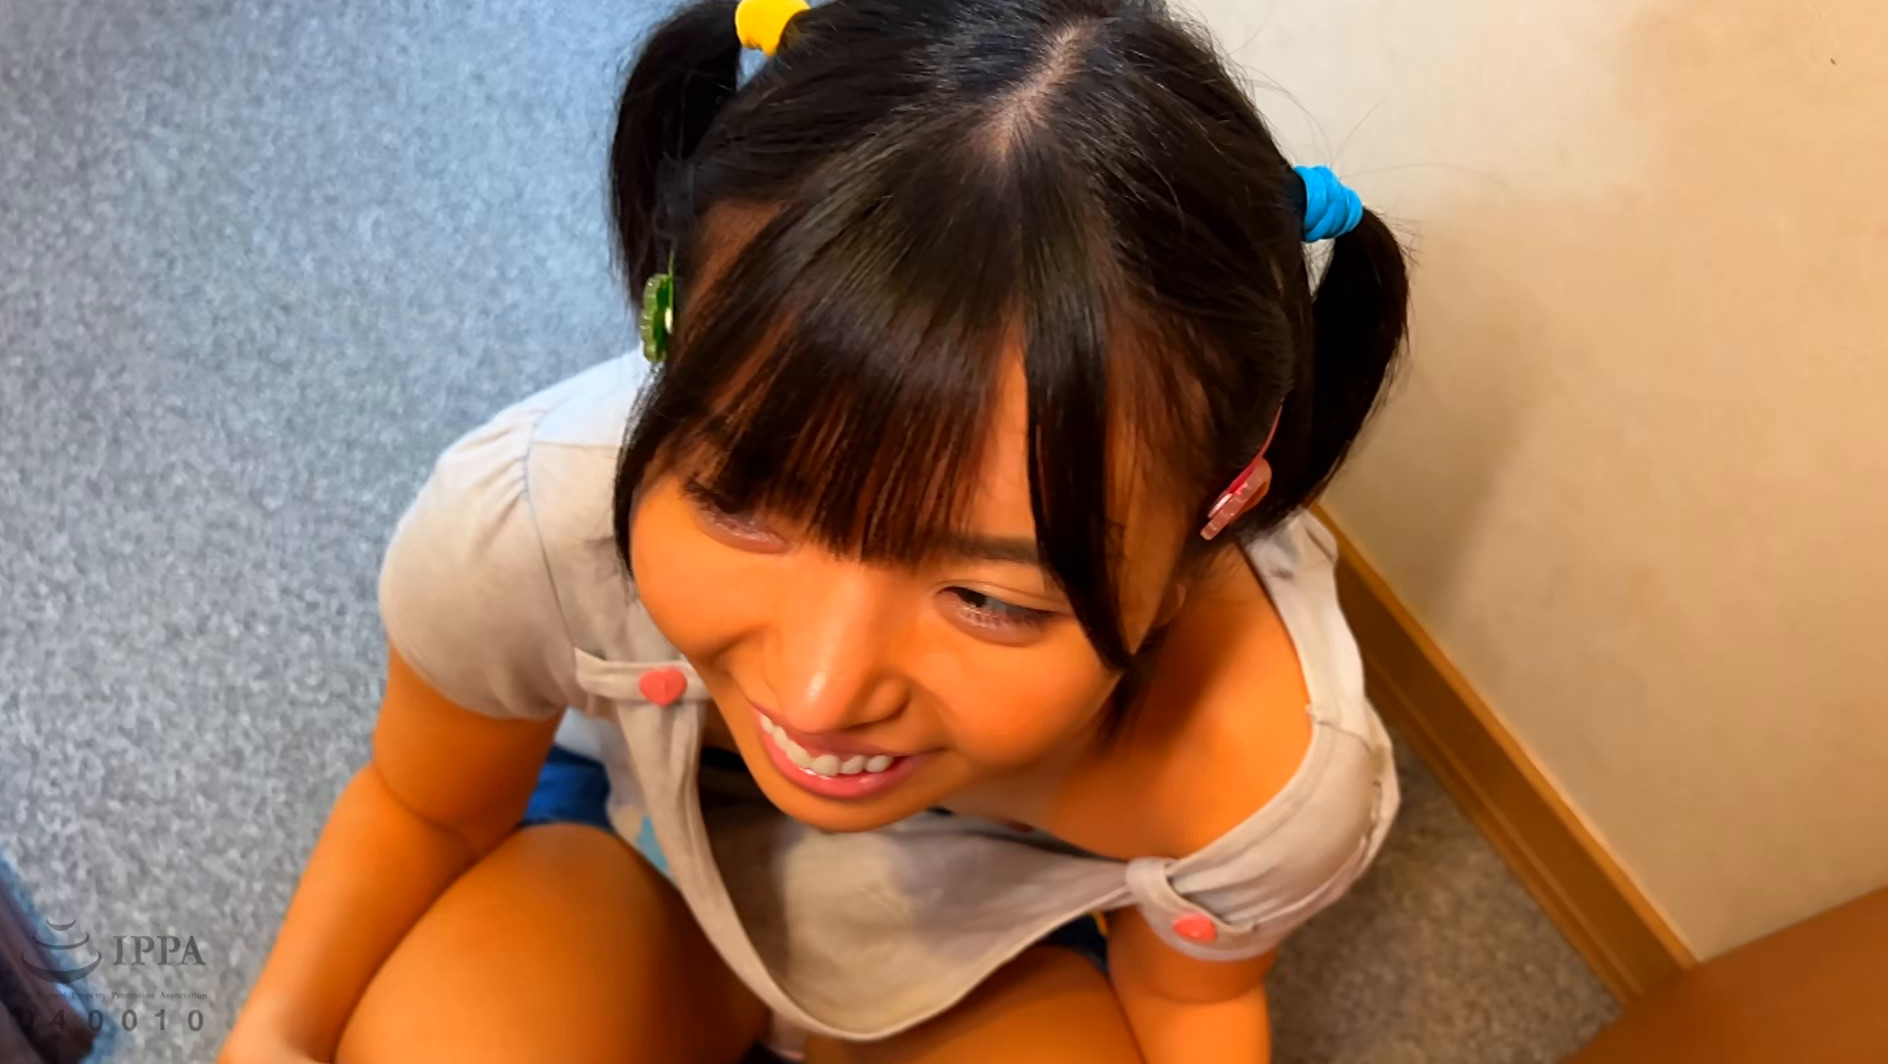 【エロ動画】日焼け姪っ子美少女たちの無防備な胸チラ映像